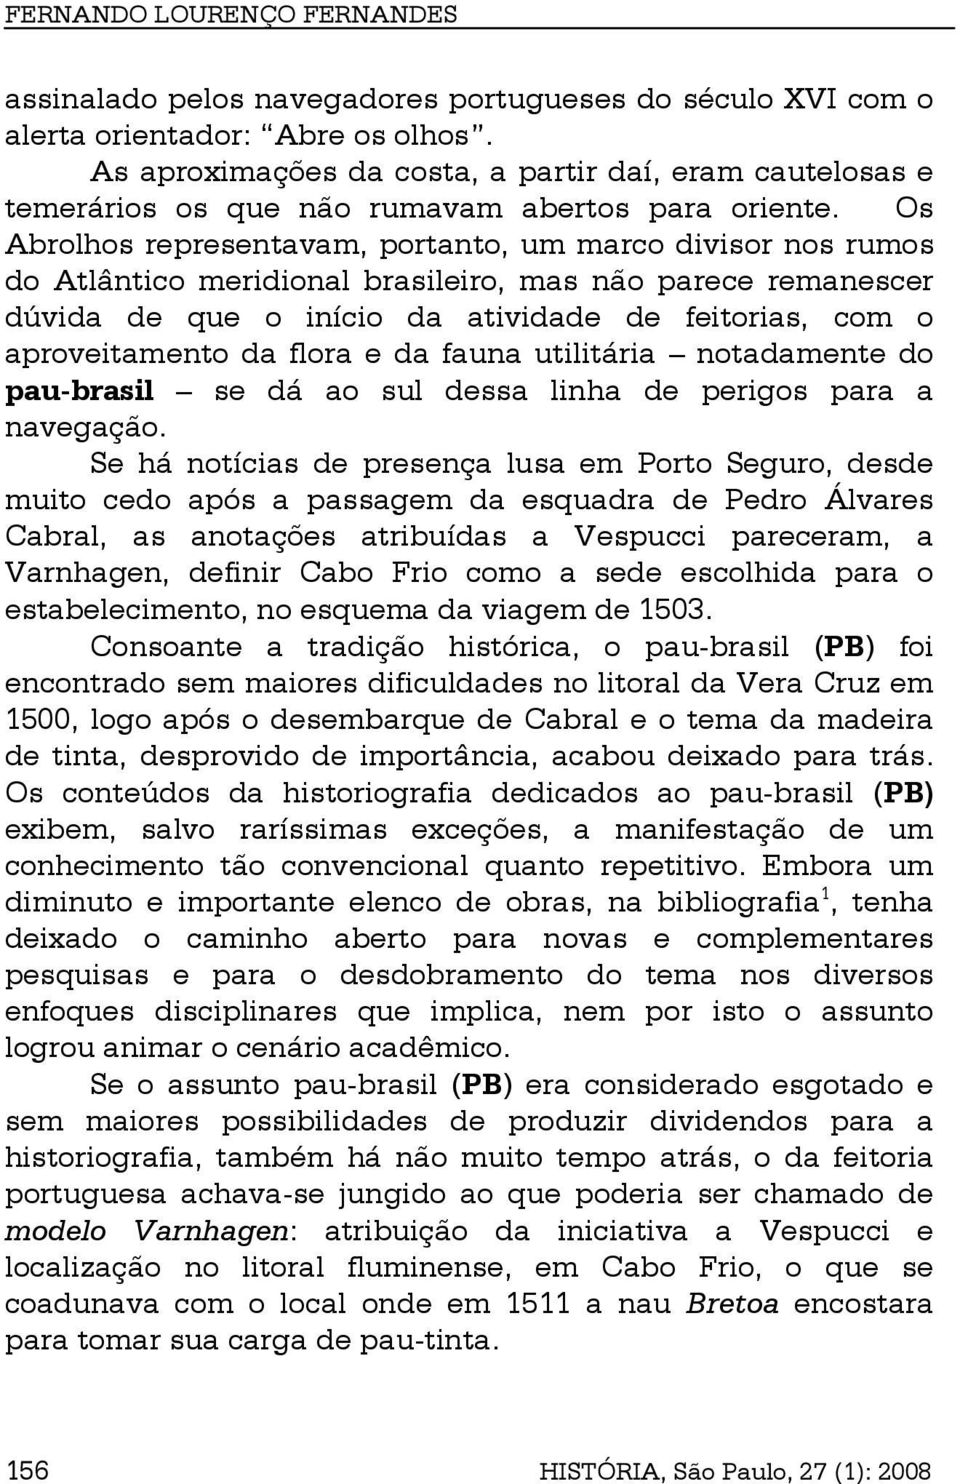 Os Abrolhos representavam, portanto, um marco divisor nos rumos do Atlântico meridional brasileiro, mas não parece remanescer dúvida de que o início da atividade de feitorias, com o aproveitamento da